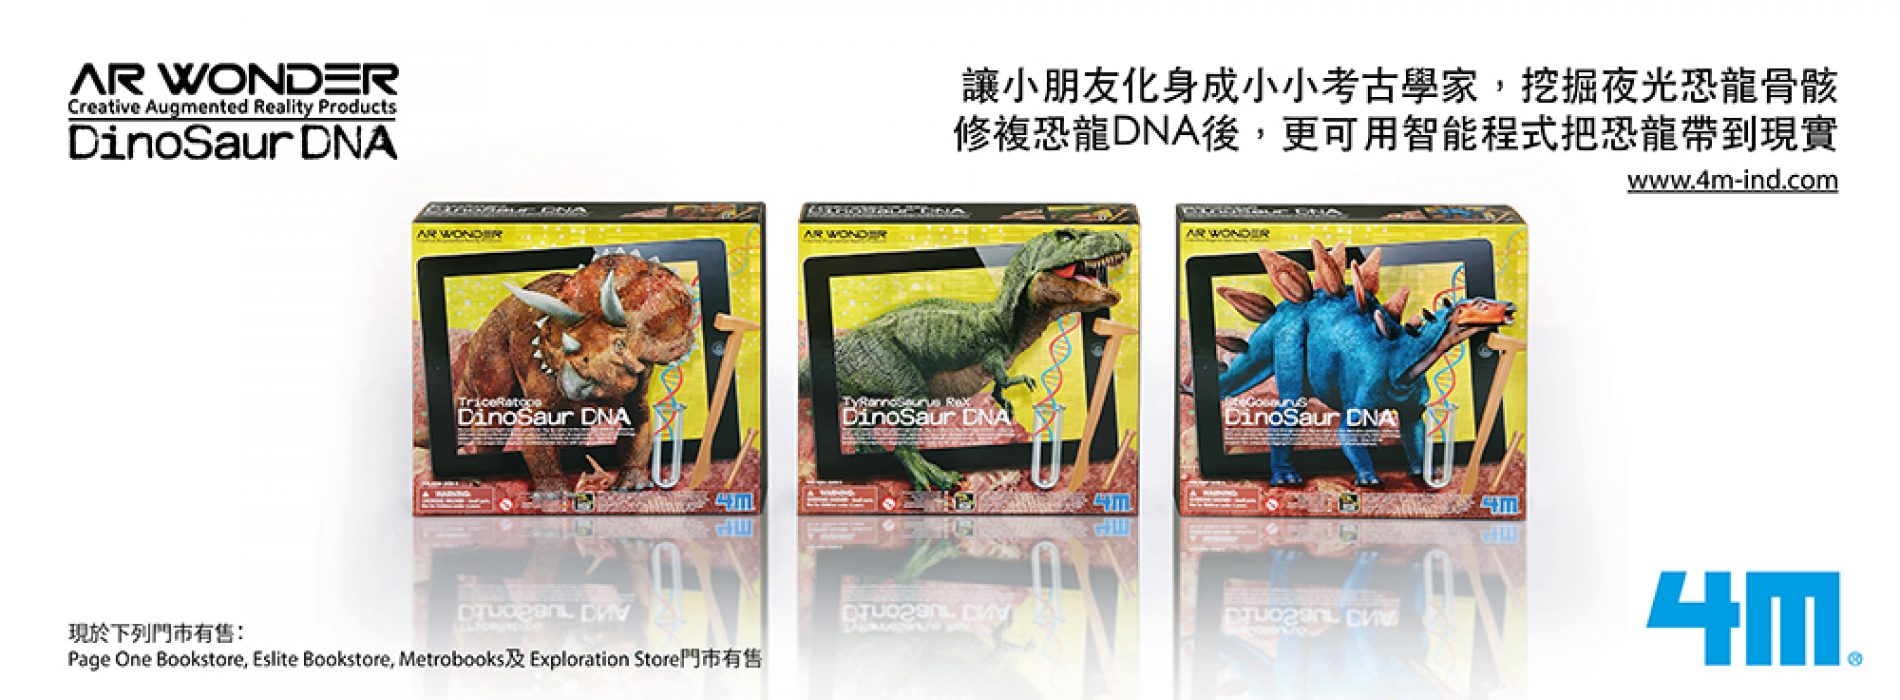 免費得‧國際益智玩具品牌4M – AR Wonder恐龍產品